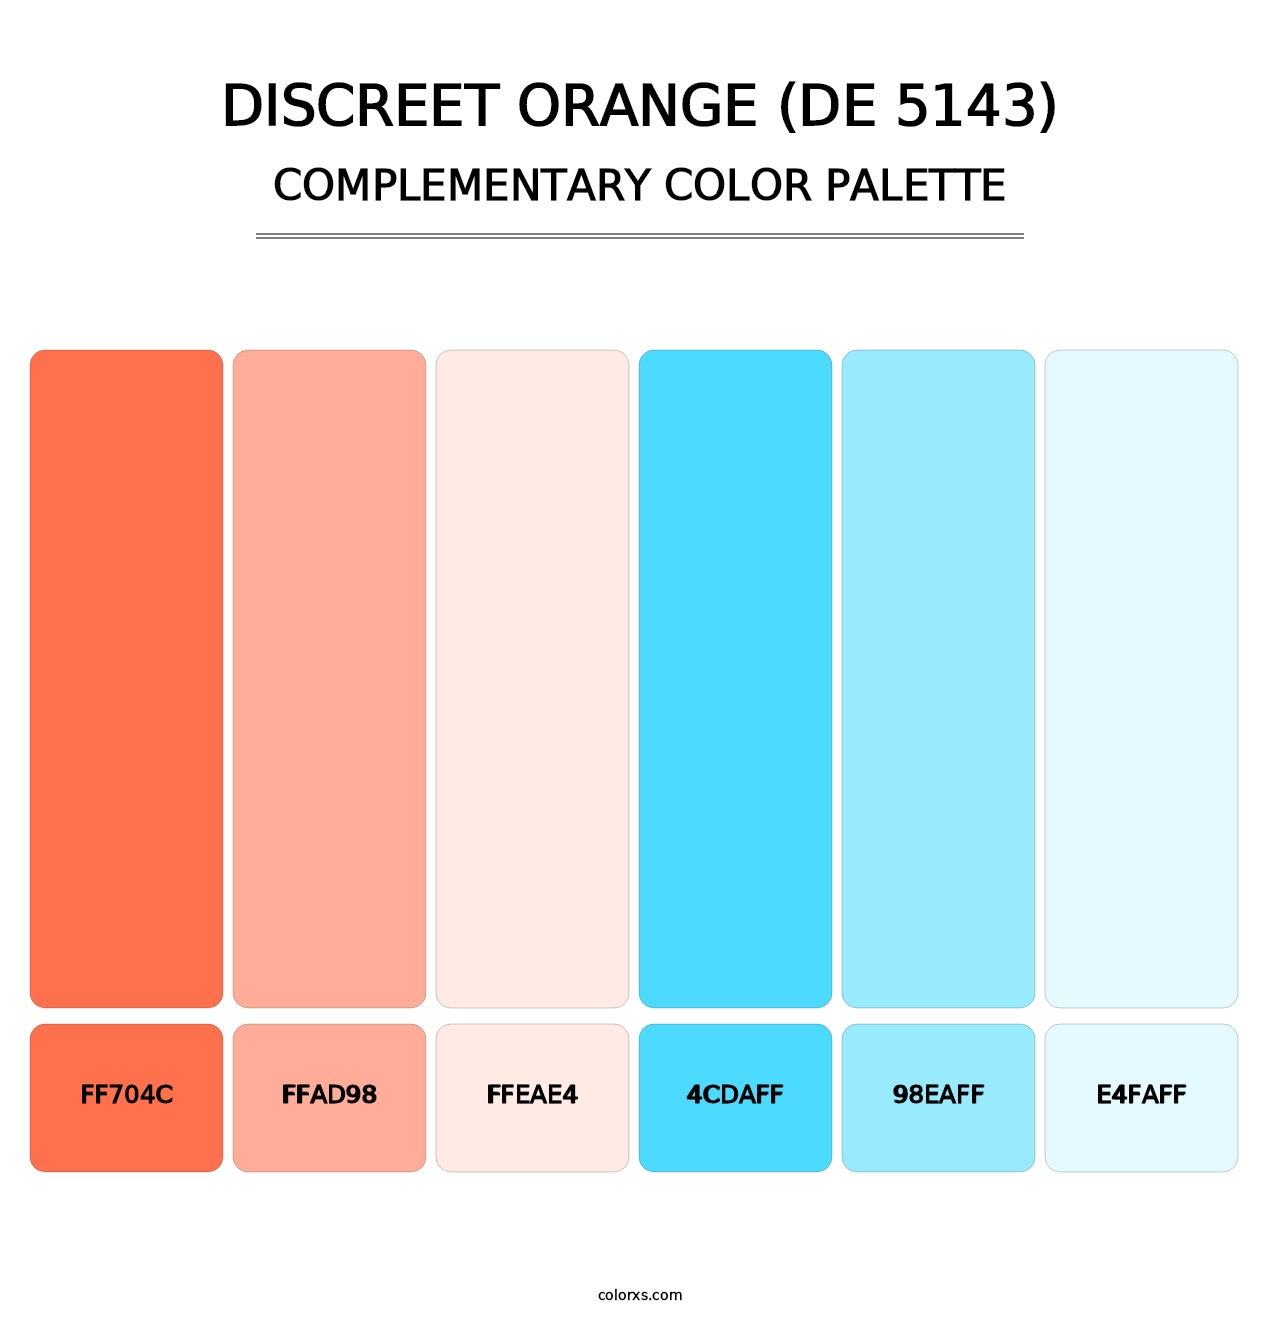 Discreet Orange (DE 5143) - Complementary Color Palette